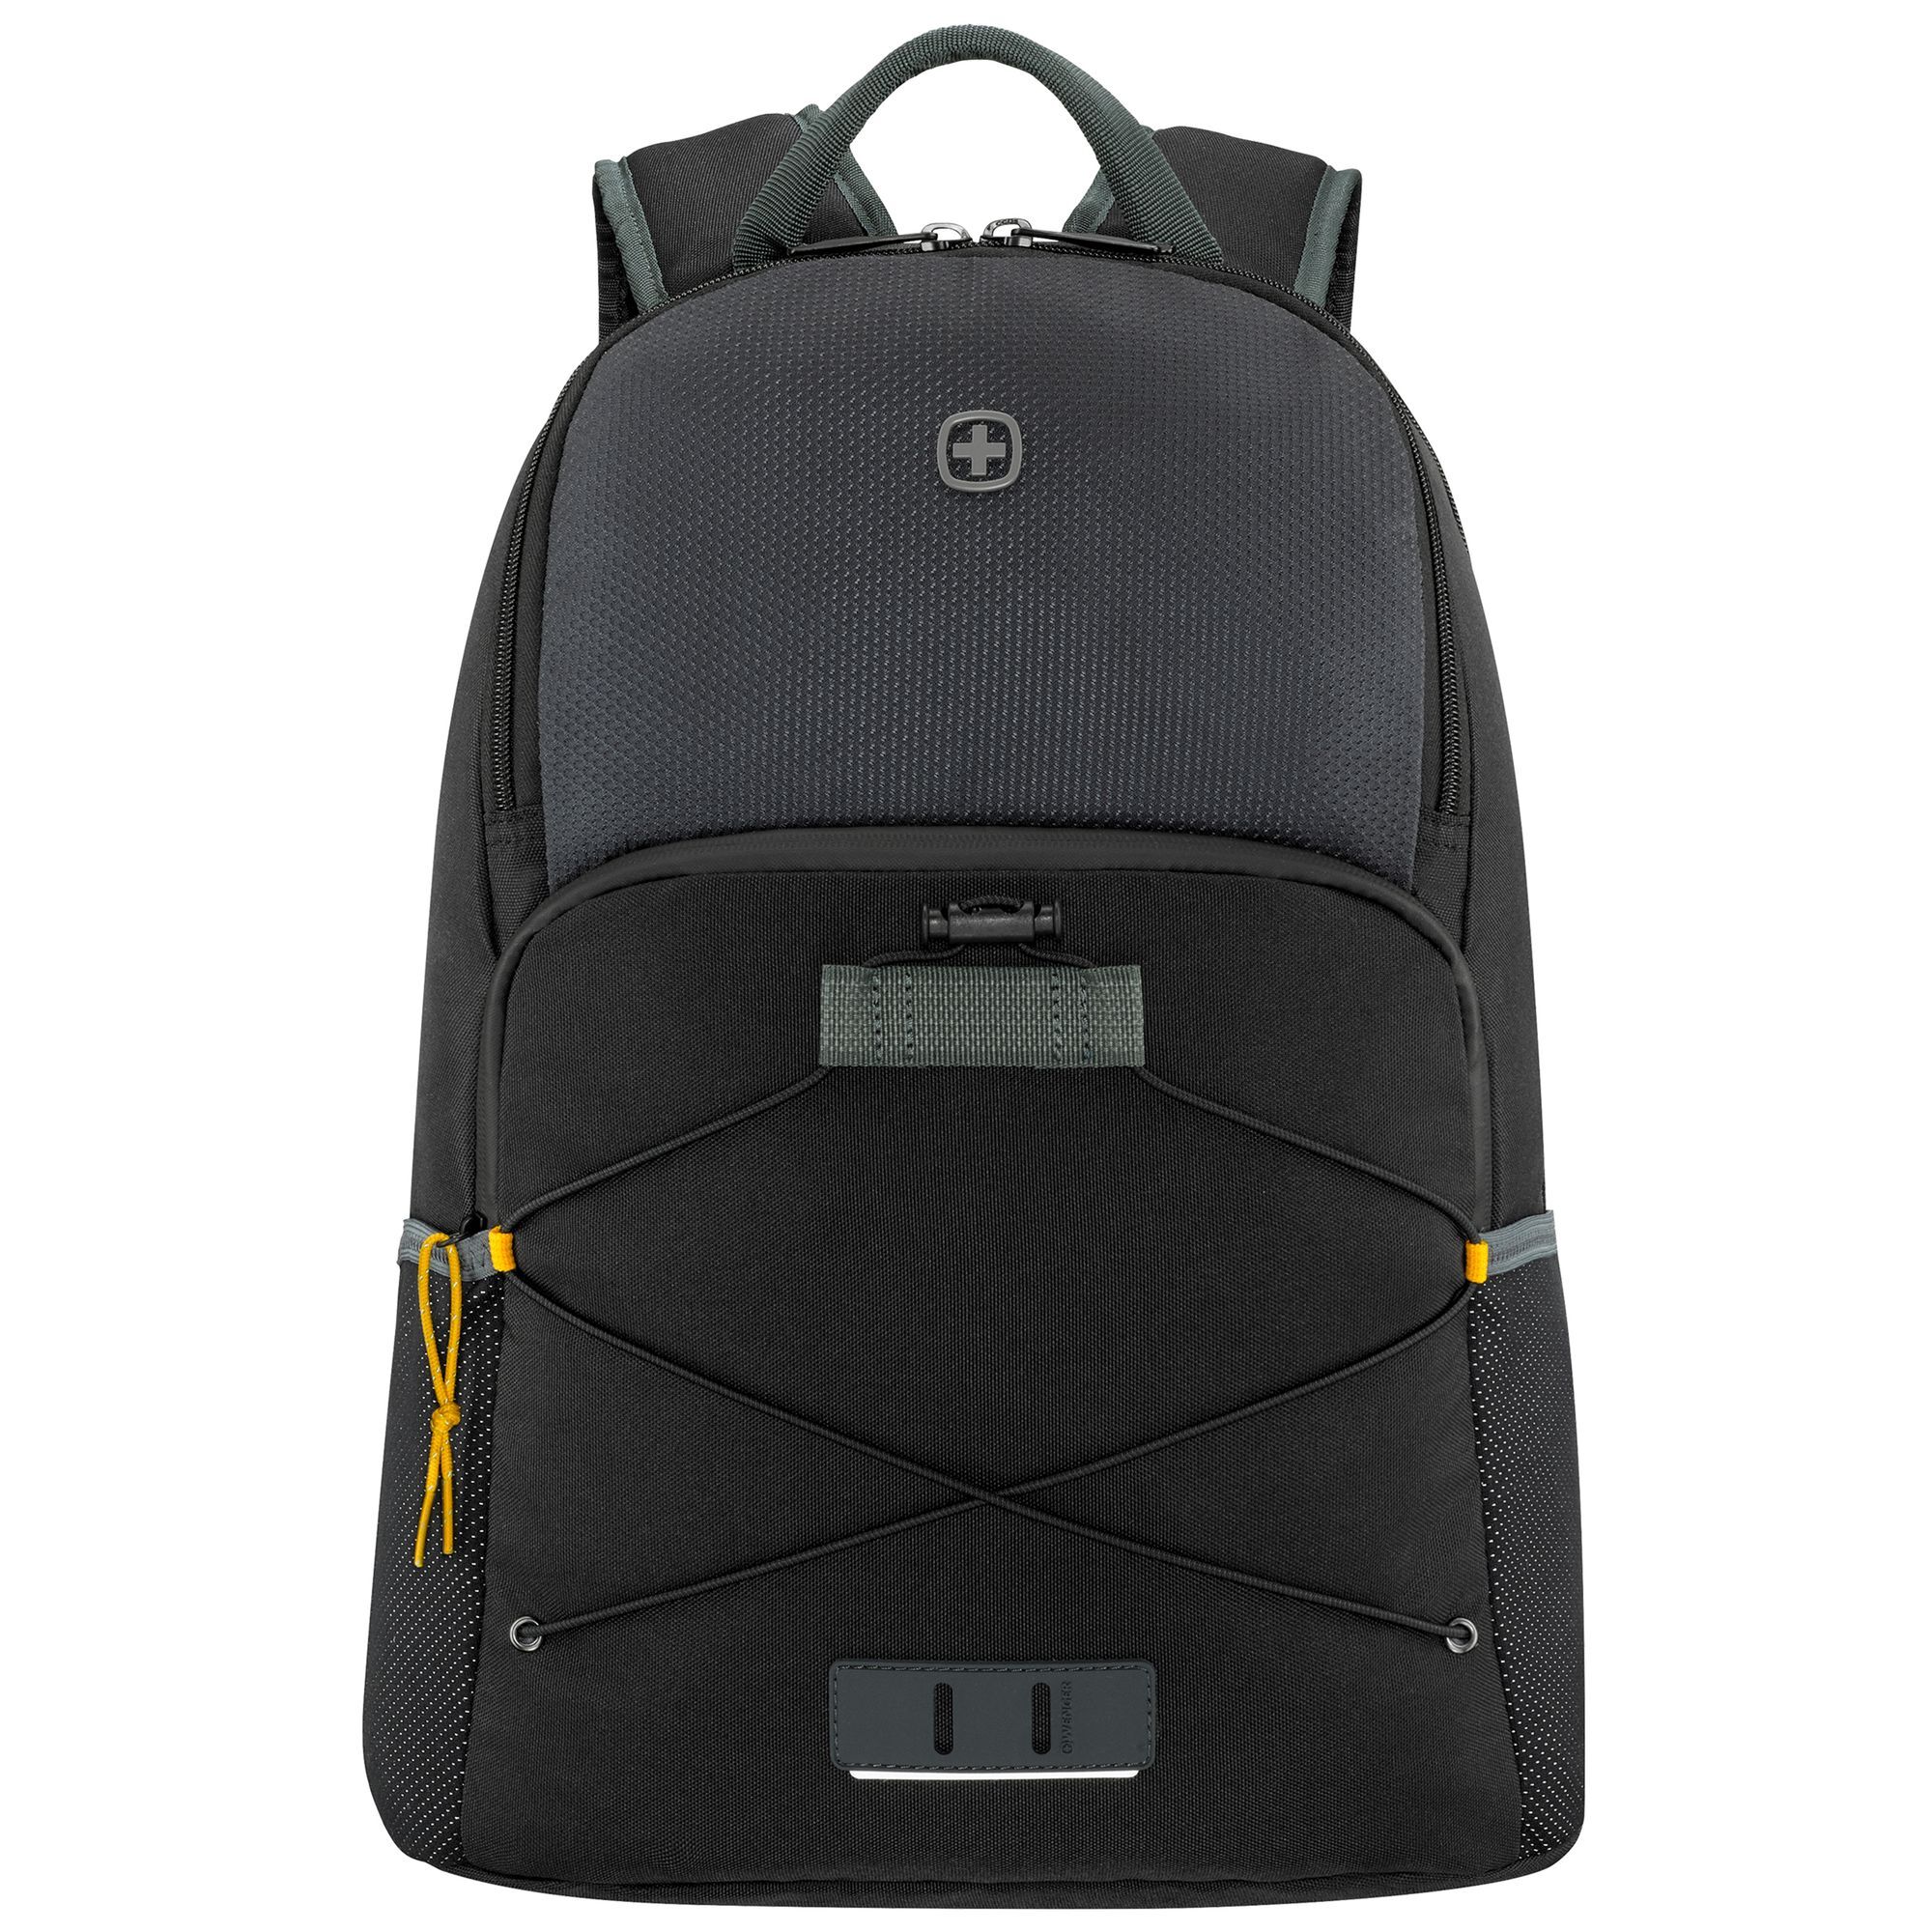 Рюкзак Wenger Trayl 45 cm Laptopfach, цвет gravity black рюкзак wenger trayl 45 cm laptopfach цвет gravity black